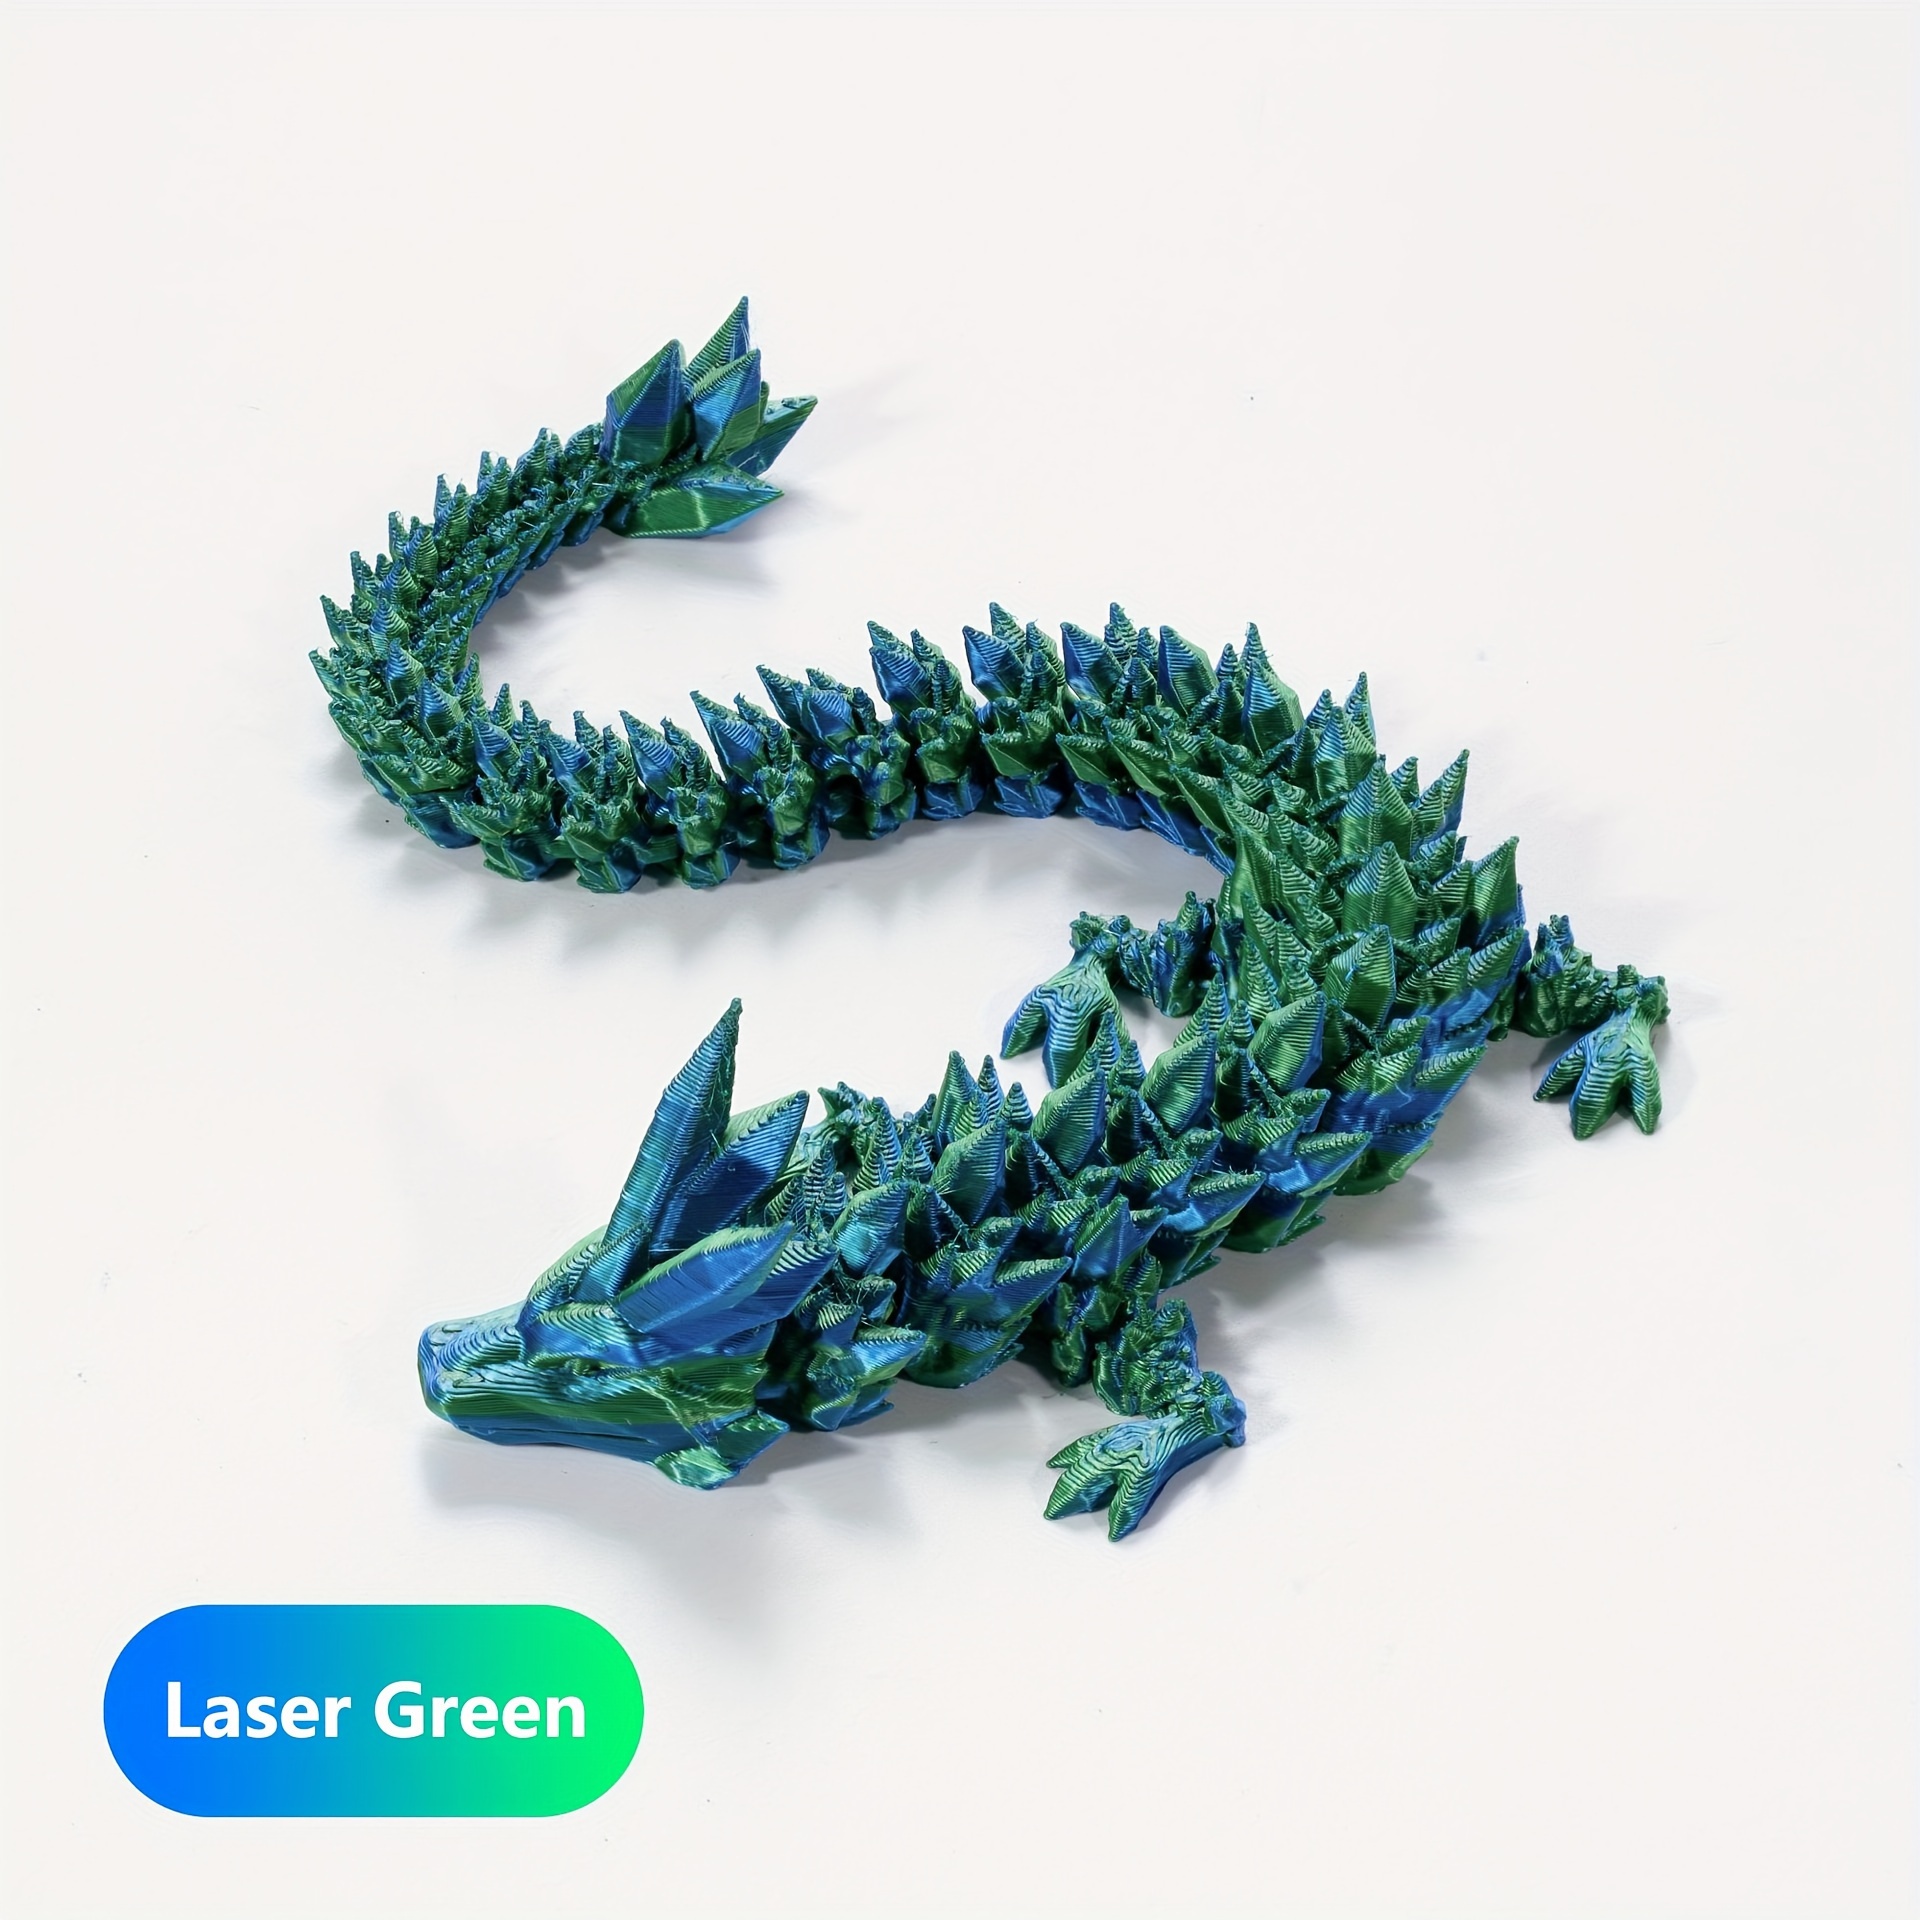 Crystal Baby Dragon Articulated Fidget Toy - Flexi Dragon